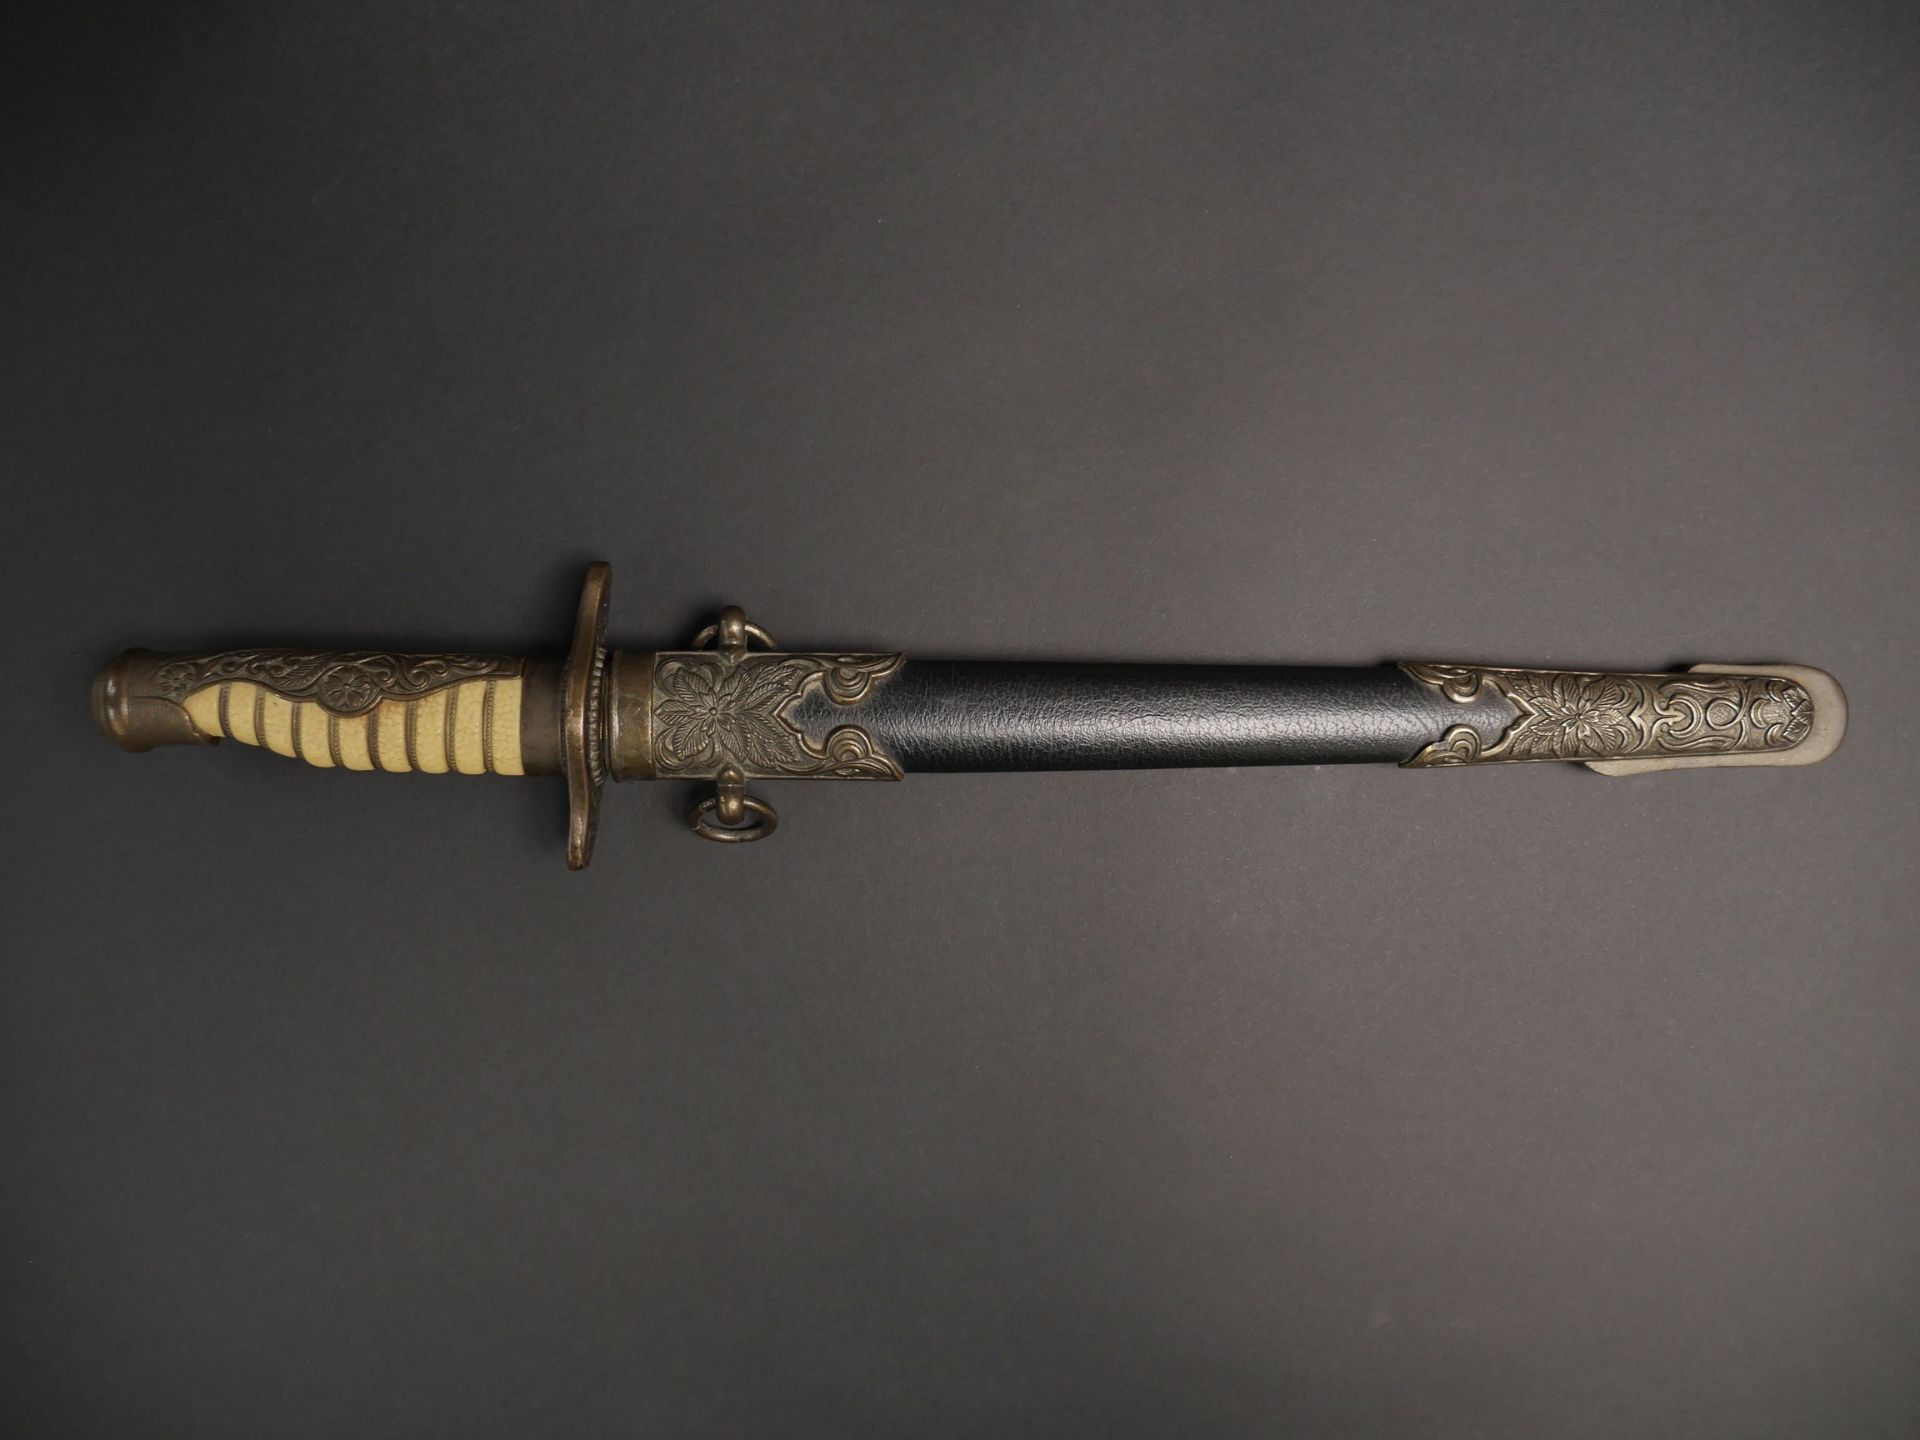 Dague Marine japonaise. Japanese Navy dagger. 